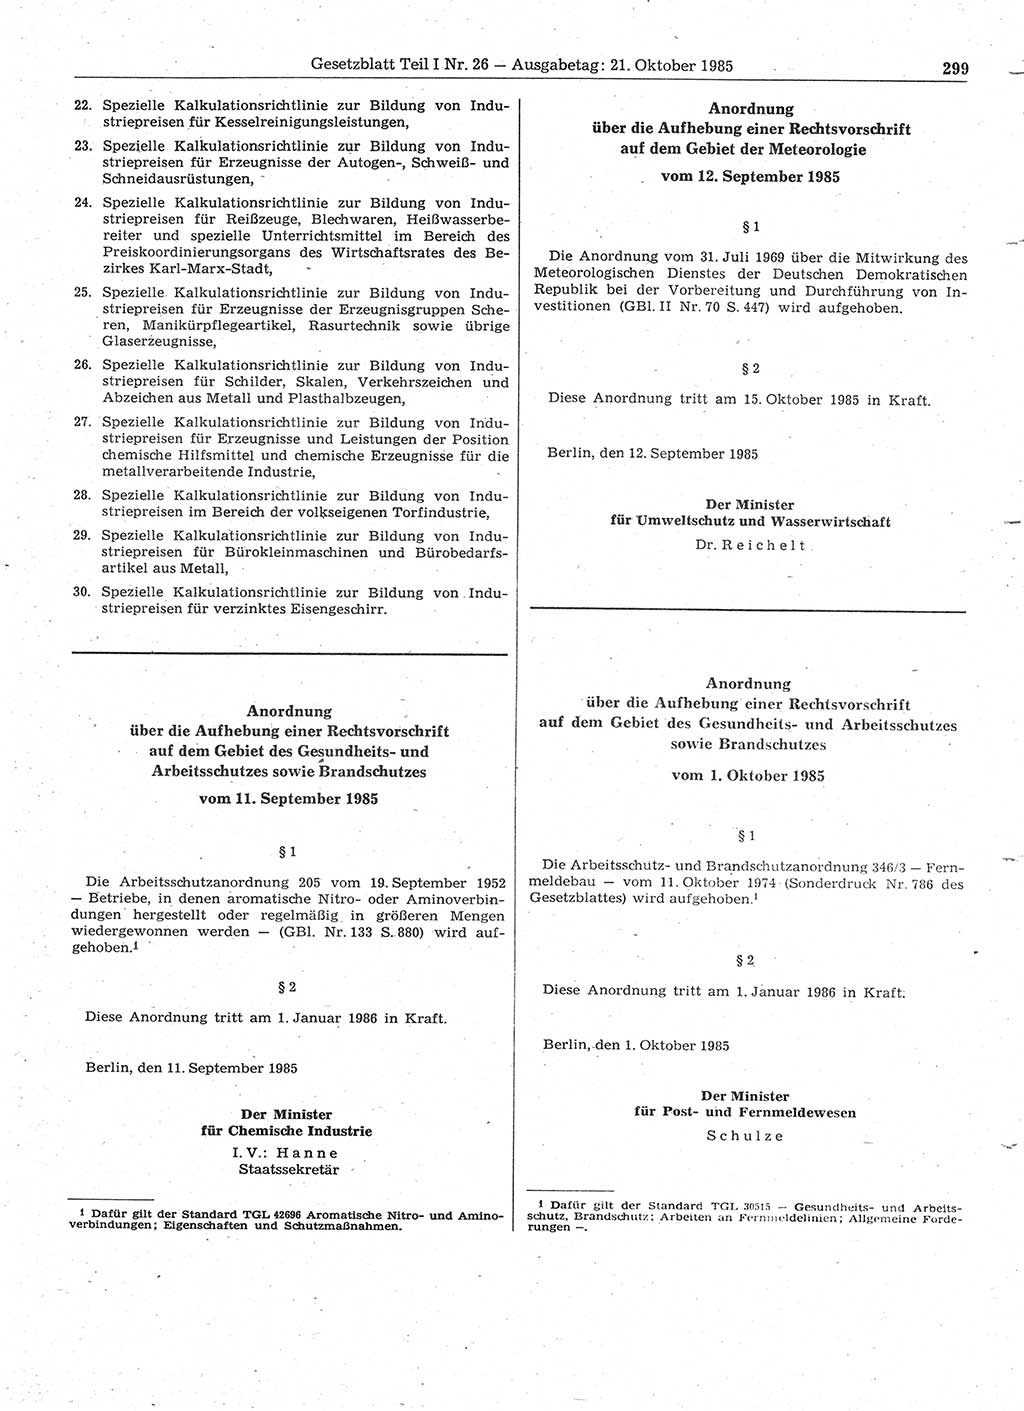 Gesetzblatt (GBl.) der Deutschen Demokratischen Republik (DDR) Teil Ⅰ 1985, Seite 299 (GBl. DDR Ⅰ 1985, S. 299)